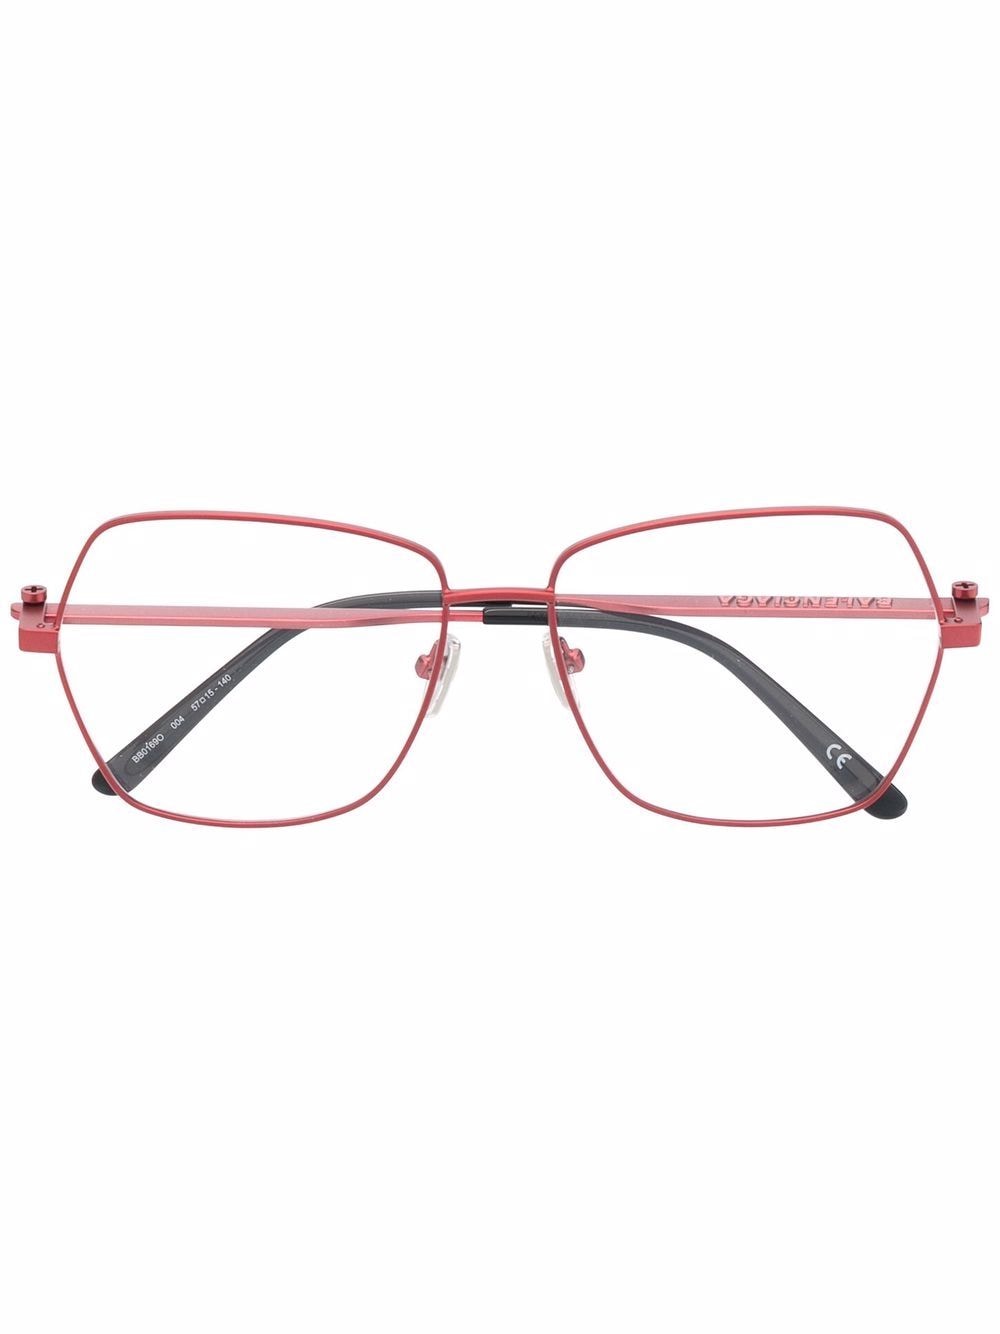 фото Balenciaga eyewear массивные солнцезащитные очки в геометричной оправе